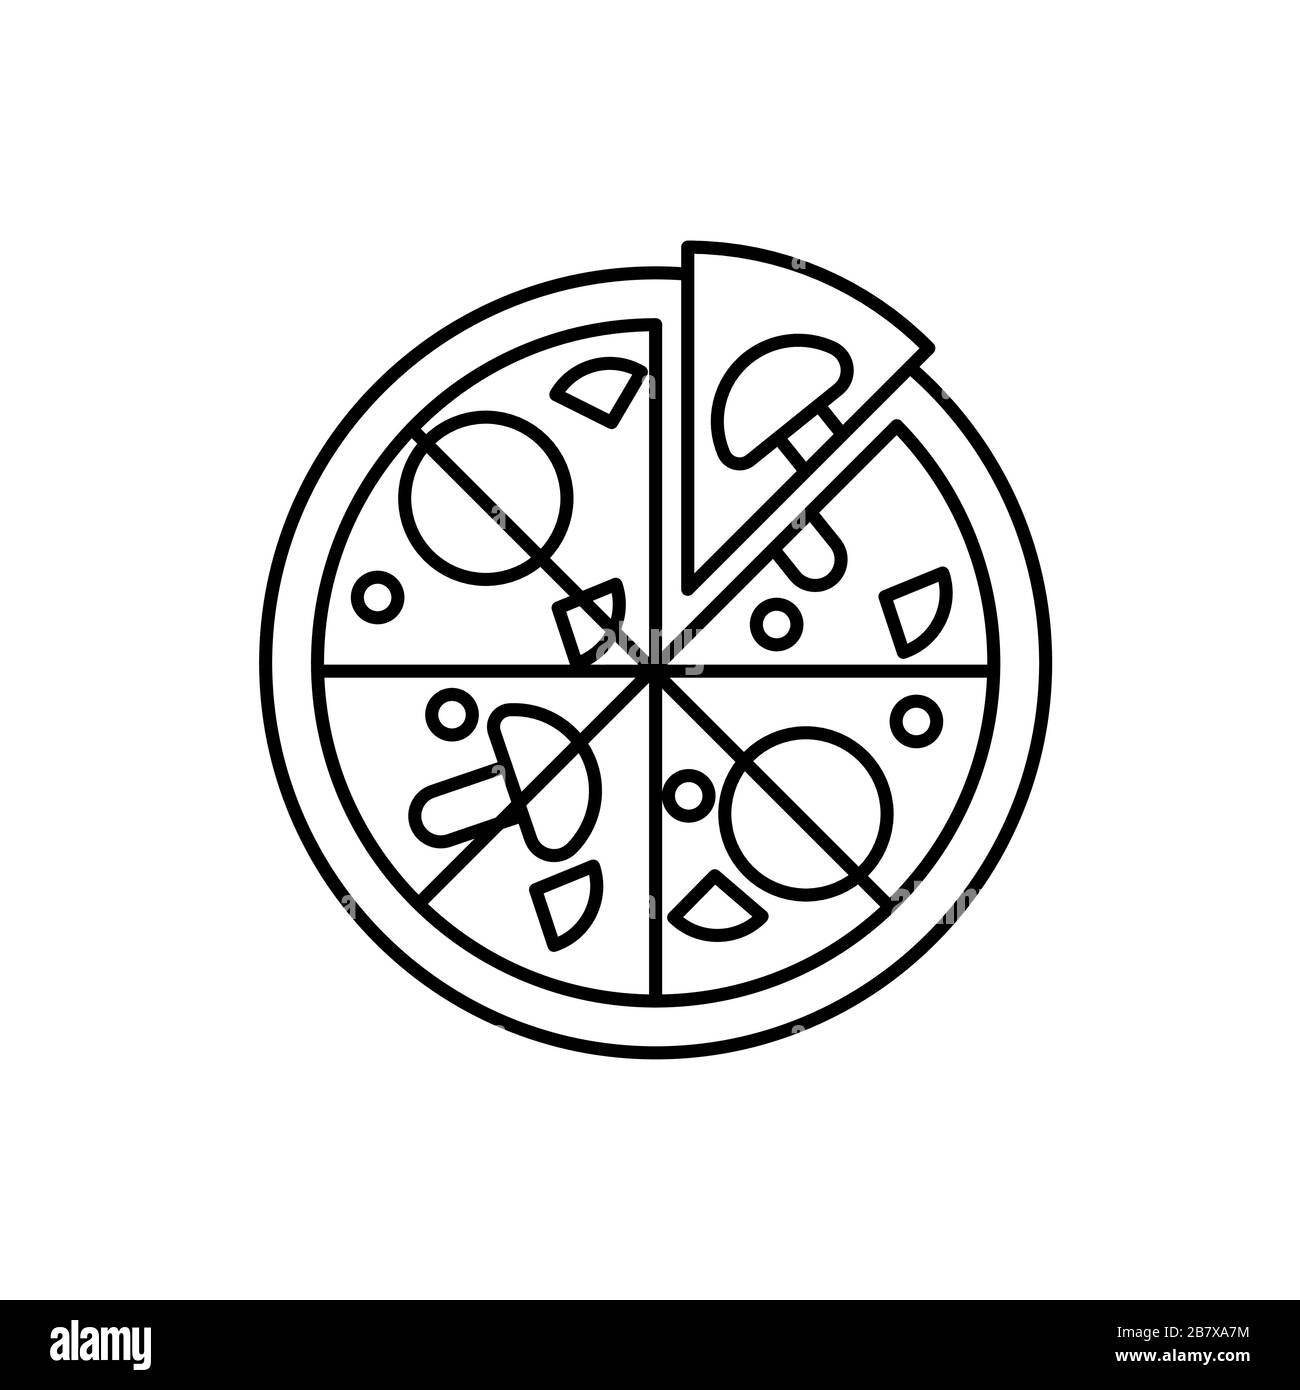 Einfaches Symbol für Pizza mit Umriss. Lebensmittelsymbol. Pizza mit Tomaten, Champignons, Wurst und einer Scheibe getrennt lineares Symbol Stock Vektor